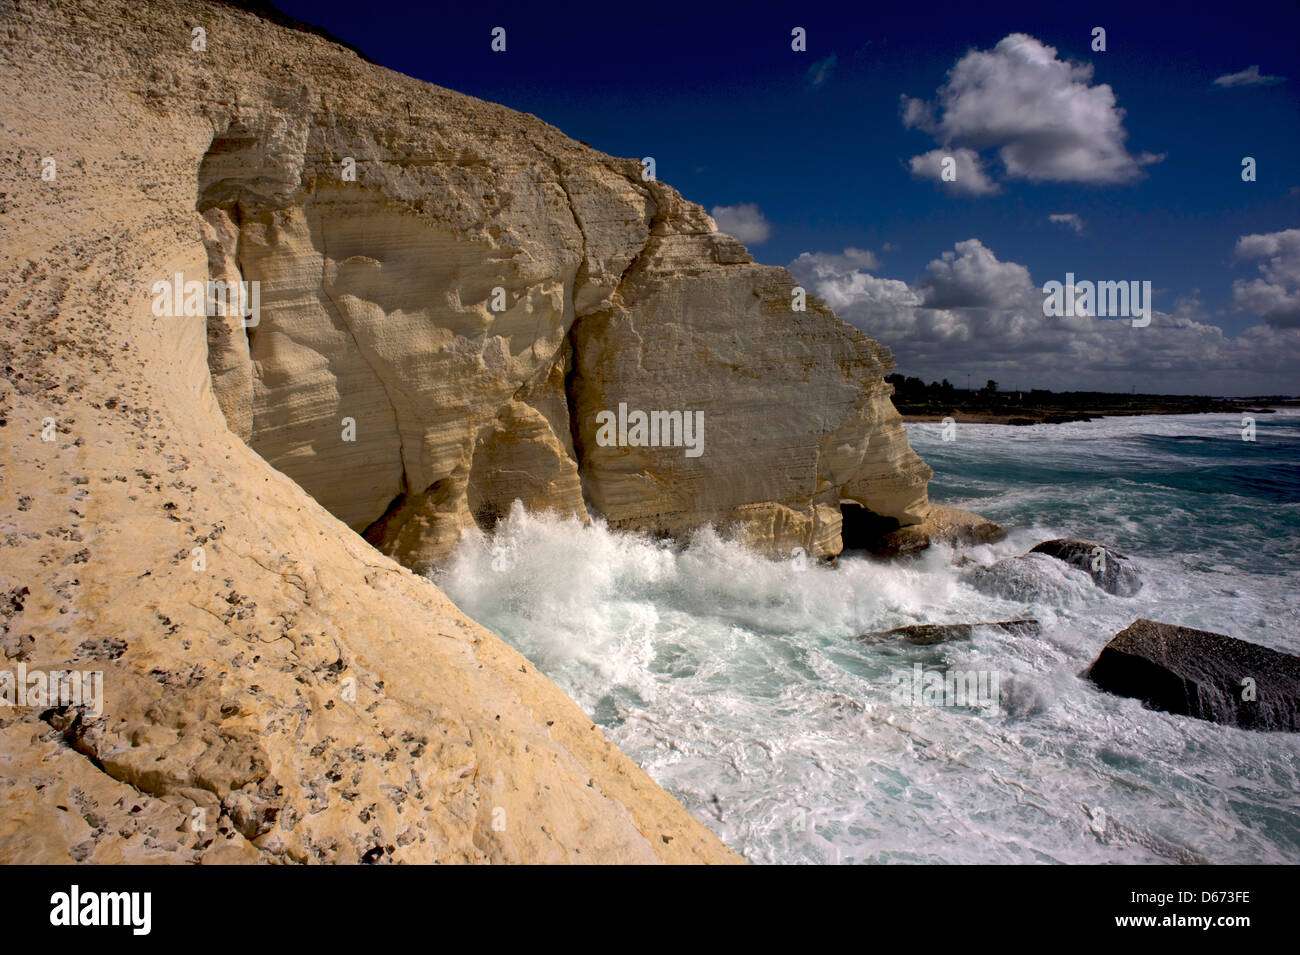 RAS-an-Nakura, berühmte Grotten, eine geologische Formation an der Grenze zwischen Israel und dem Libanon, an der Mittelmeerküste. Westgalilea Stockfoto